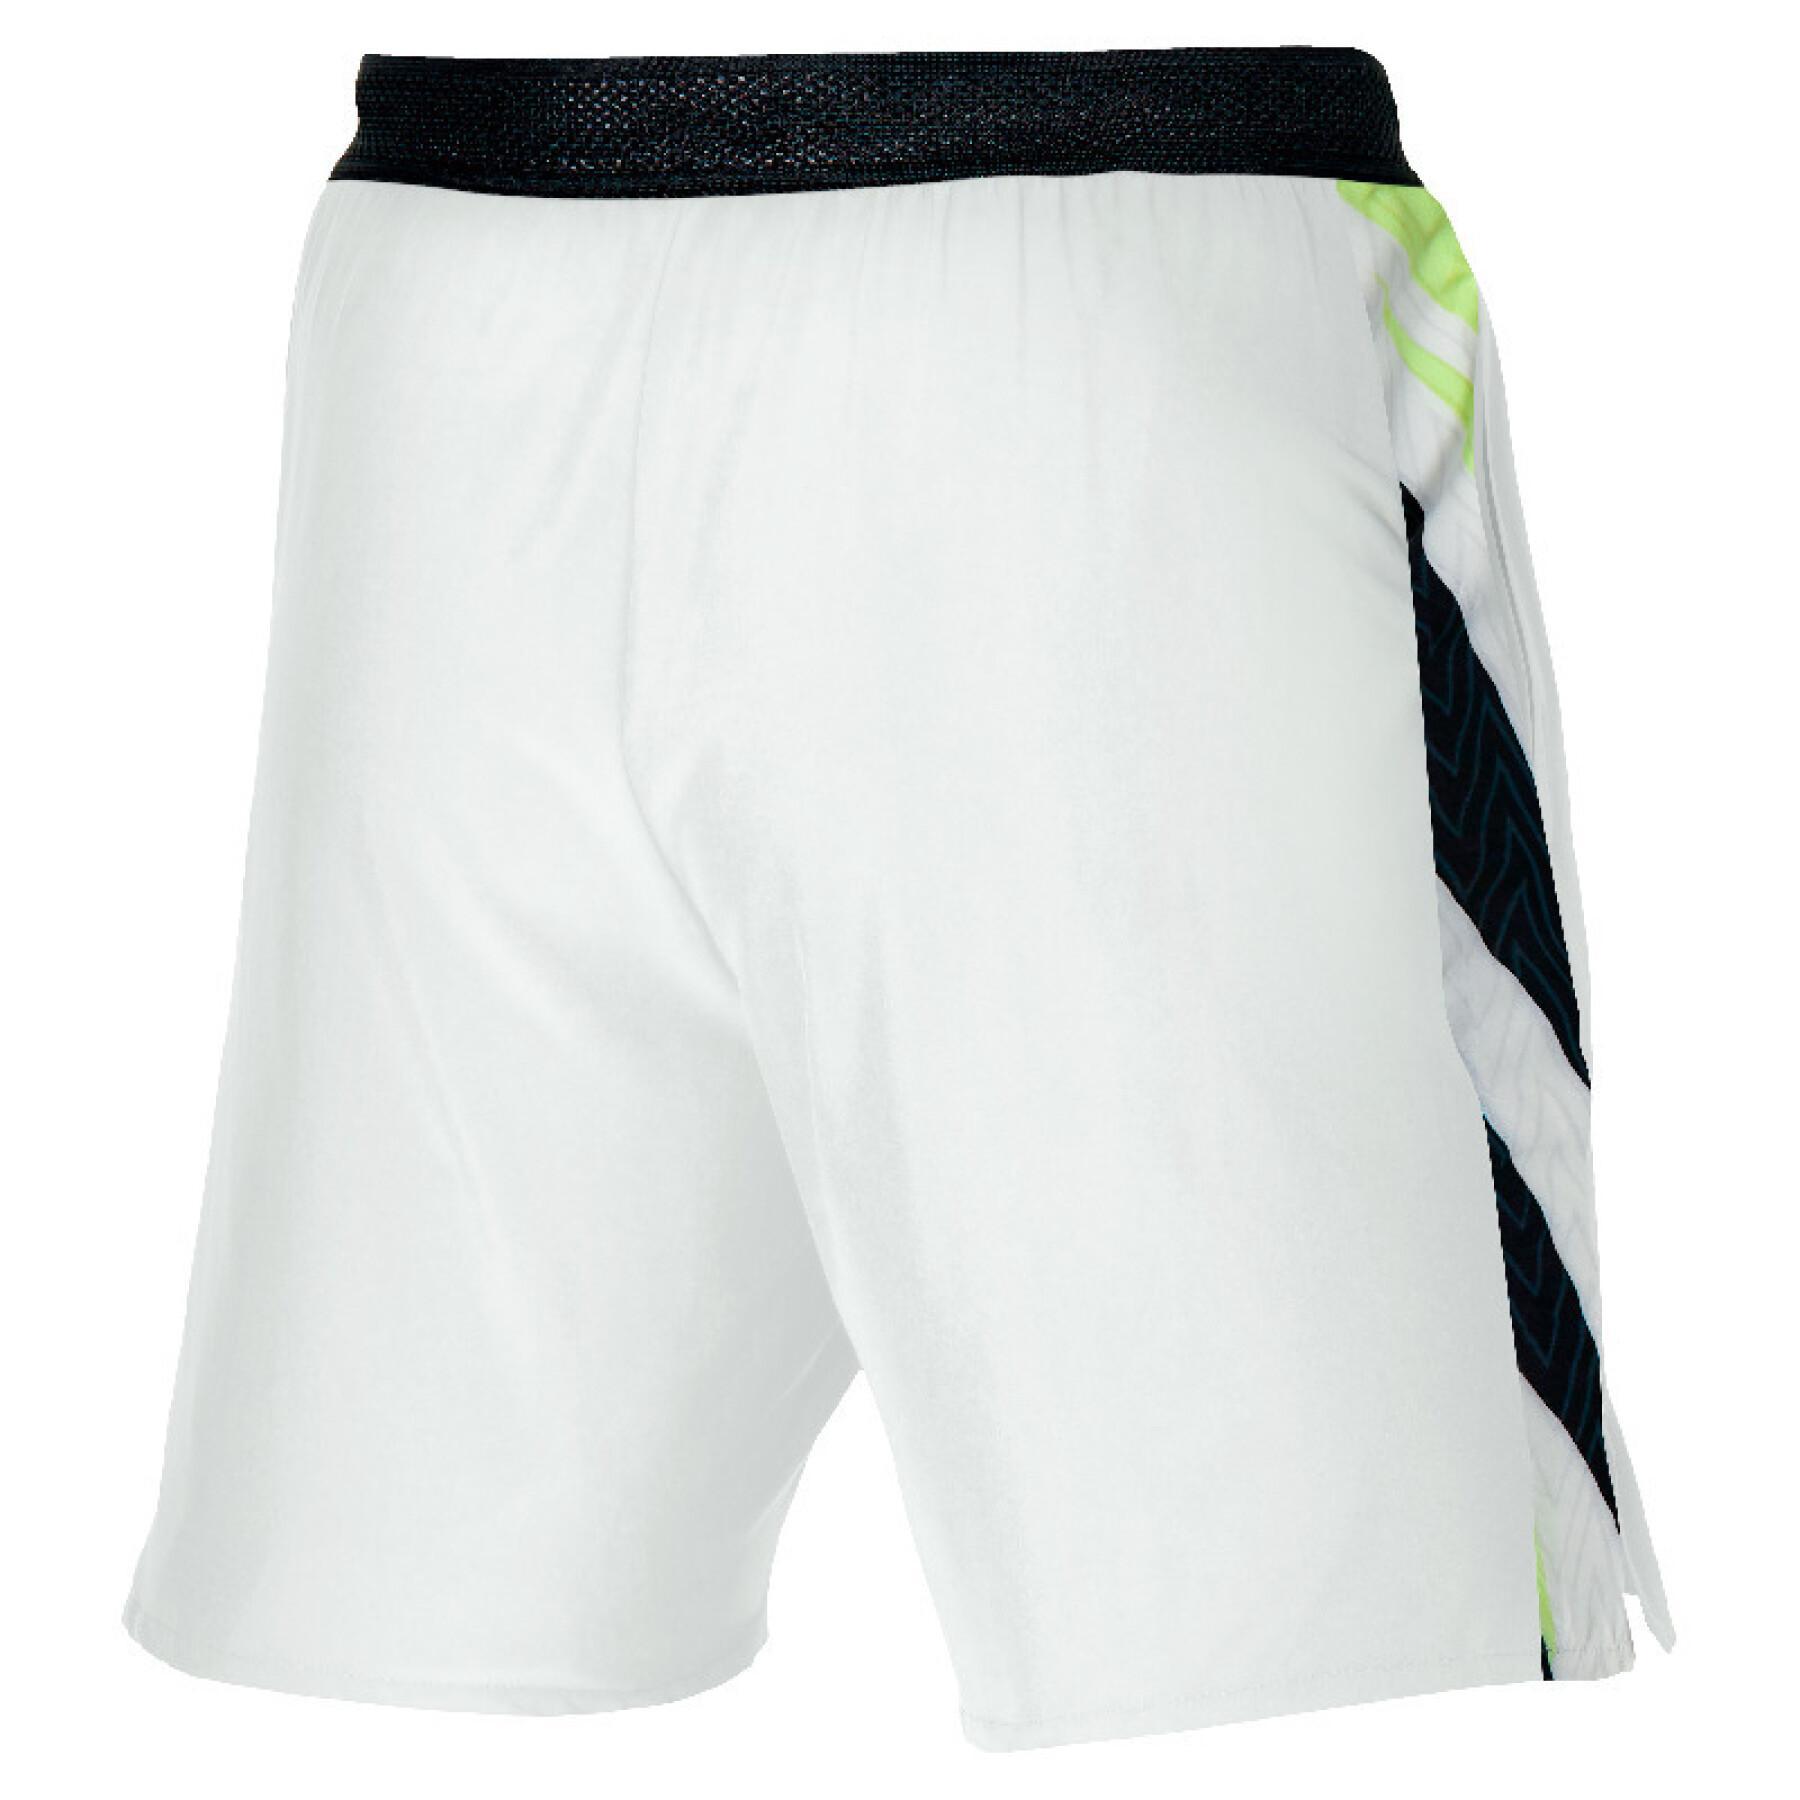 Tennis shorts Mizuno Amplify